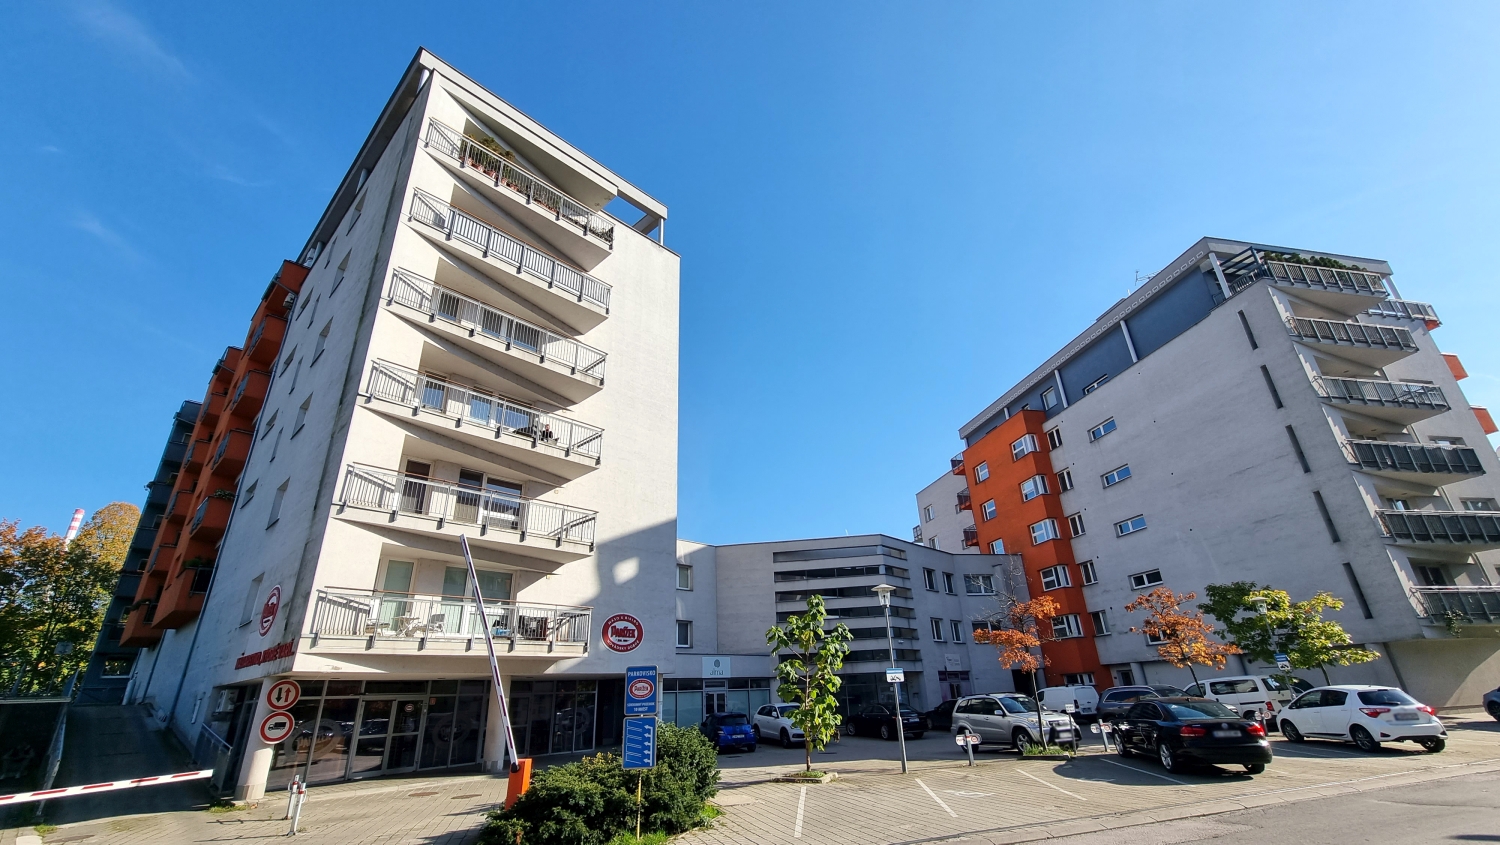 EXKLUZÍVNE! Výnimočný 2-izbový byt s balkónom, výborná lokalita, predaj, Žilina – centrum, Cena: 167.000 €